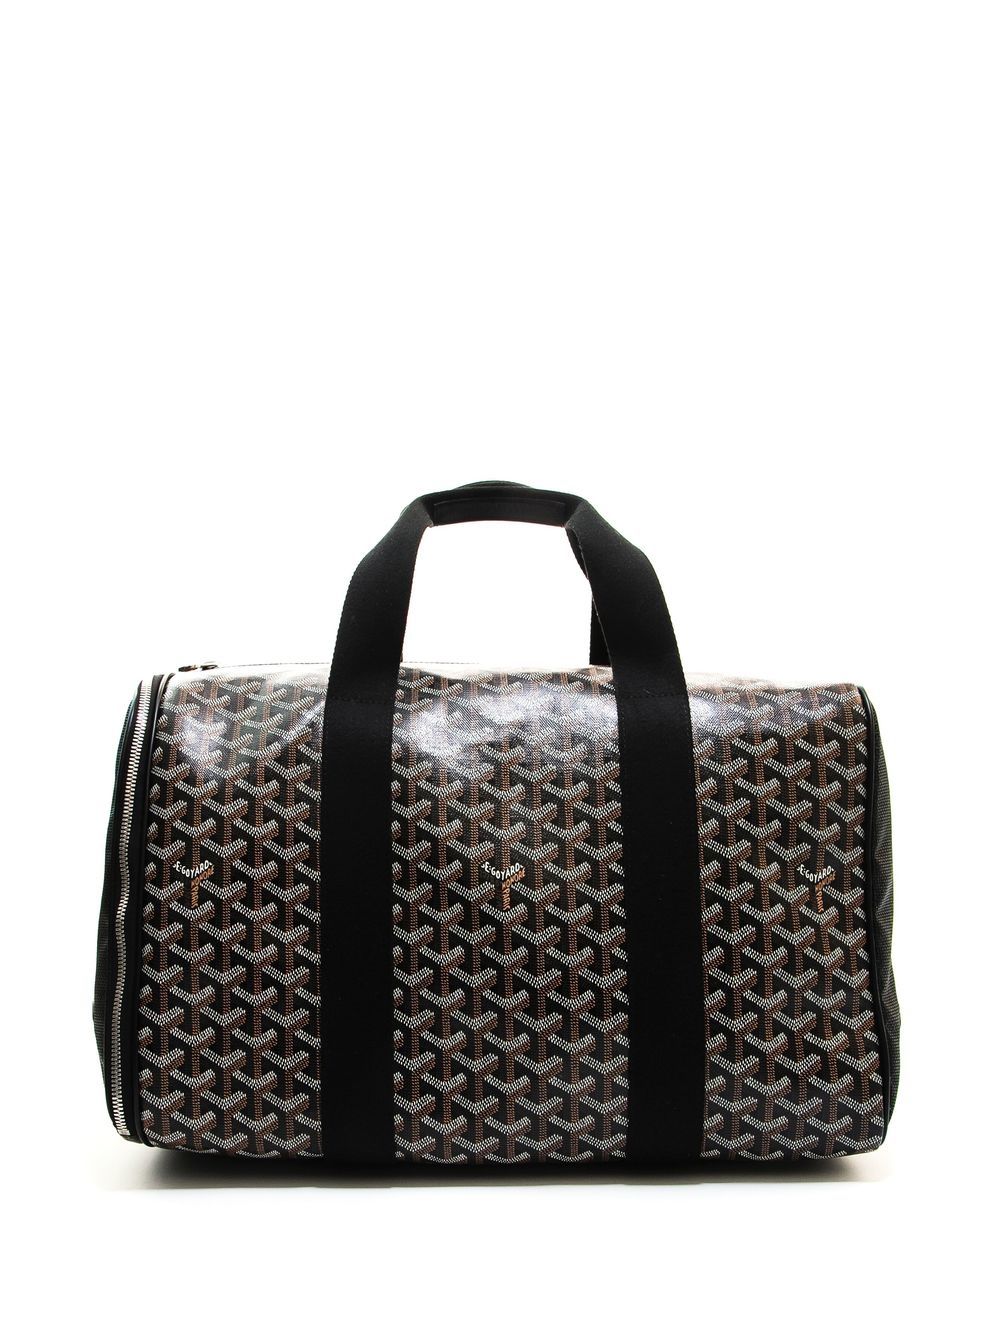 Goyard Goyardine Voltigeur MM - Brown Luggage and Travel, Handbags -  GOY31449